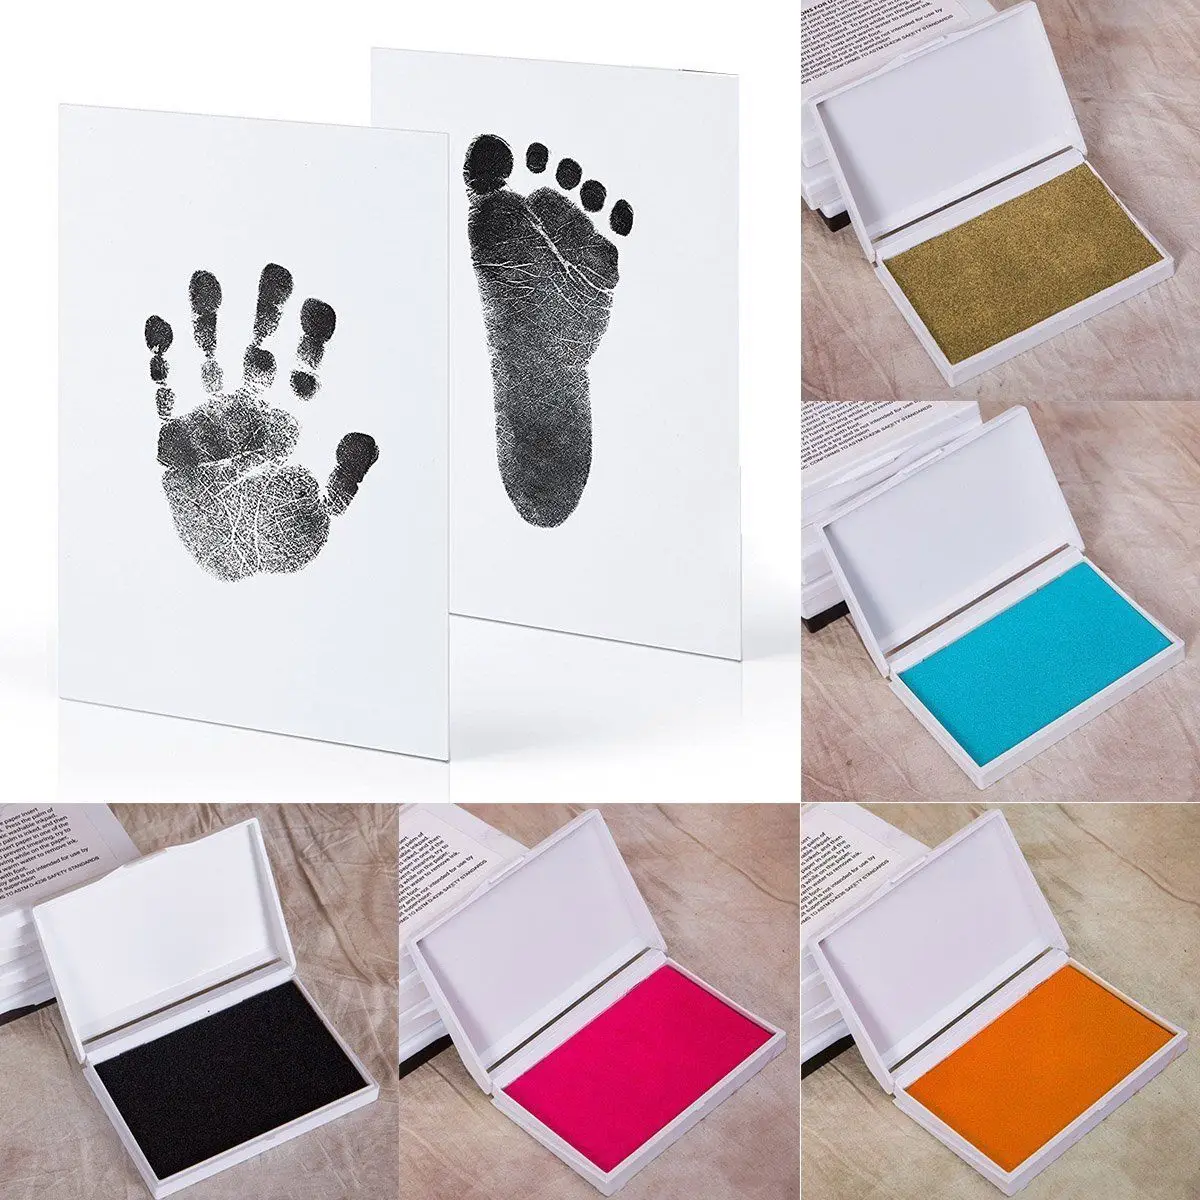 Cadre Photo tactile patte de bébé | Tampon imprimé pieds, cadre Photo tactile, articles pour bébés, Souvenir cadeau